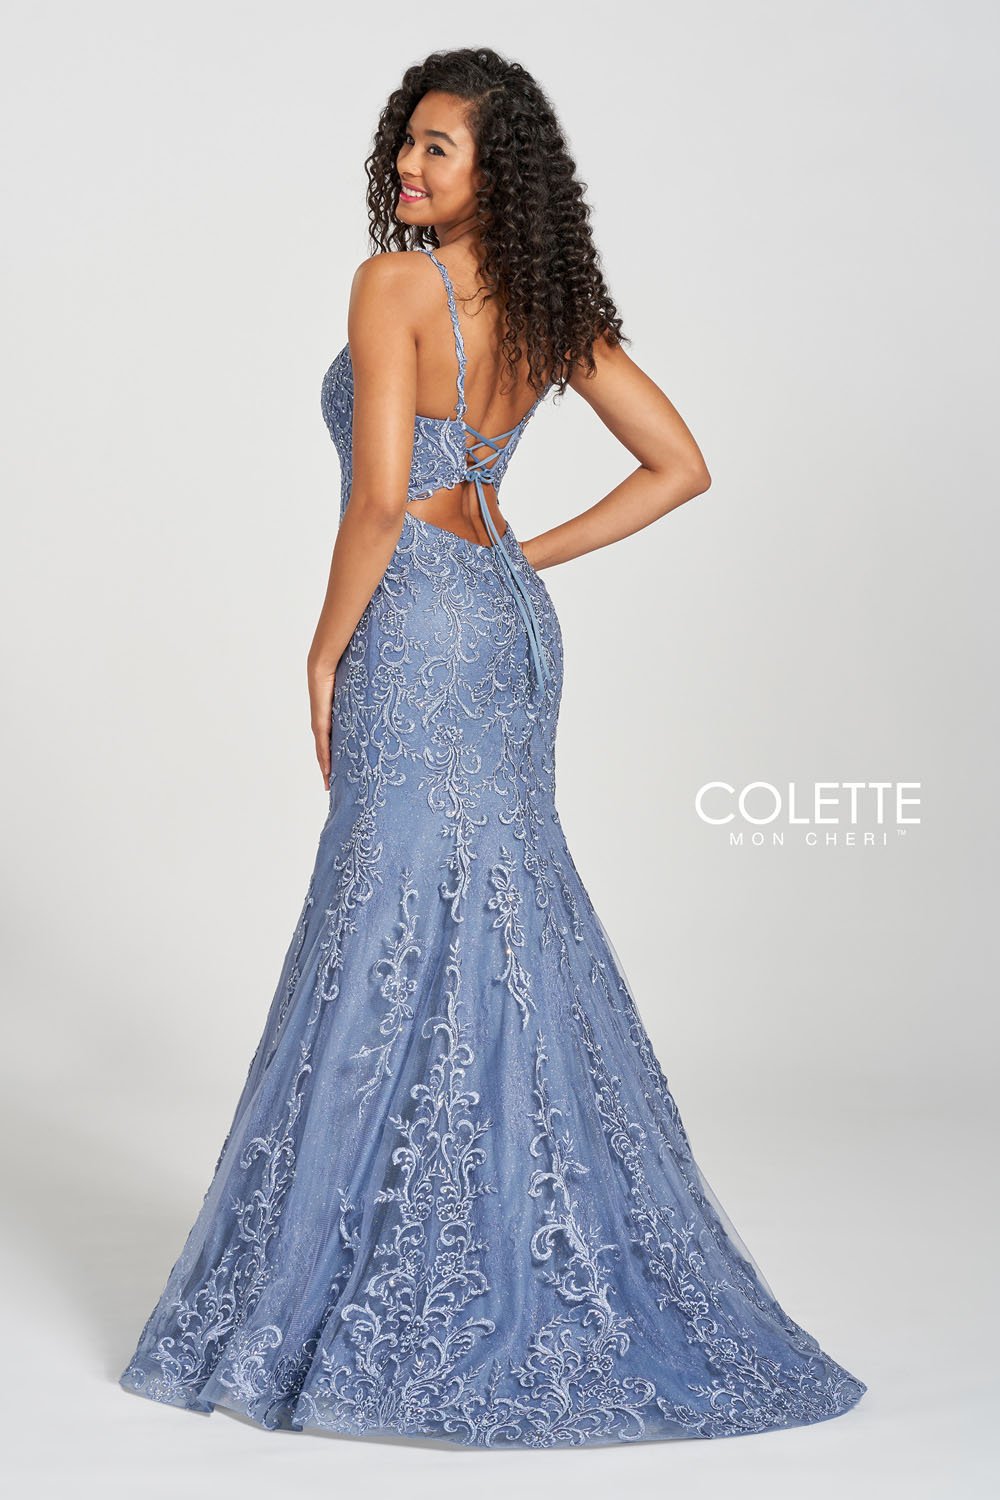 Colette CL12220 Vintage Blue prom dresses.  Vintage Blue prom dresses image by Colette.